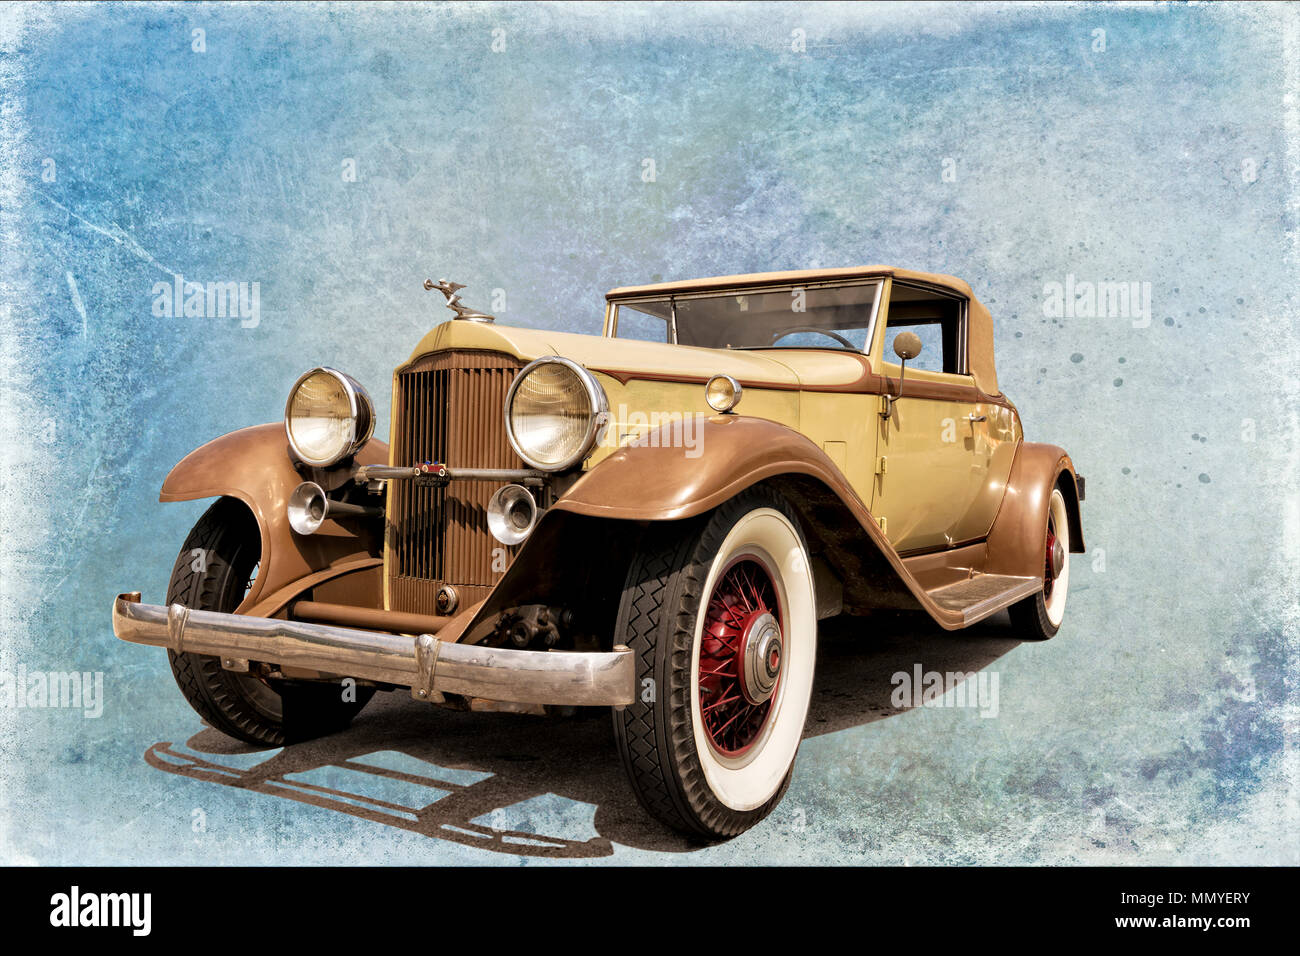 Photo d'une automobile anciens restaurés isolé et placé sur un fond texturé bleu élégant. Ombre est l'ombre de la voiture. Banque D'Images